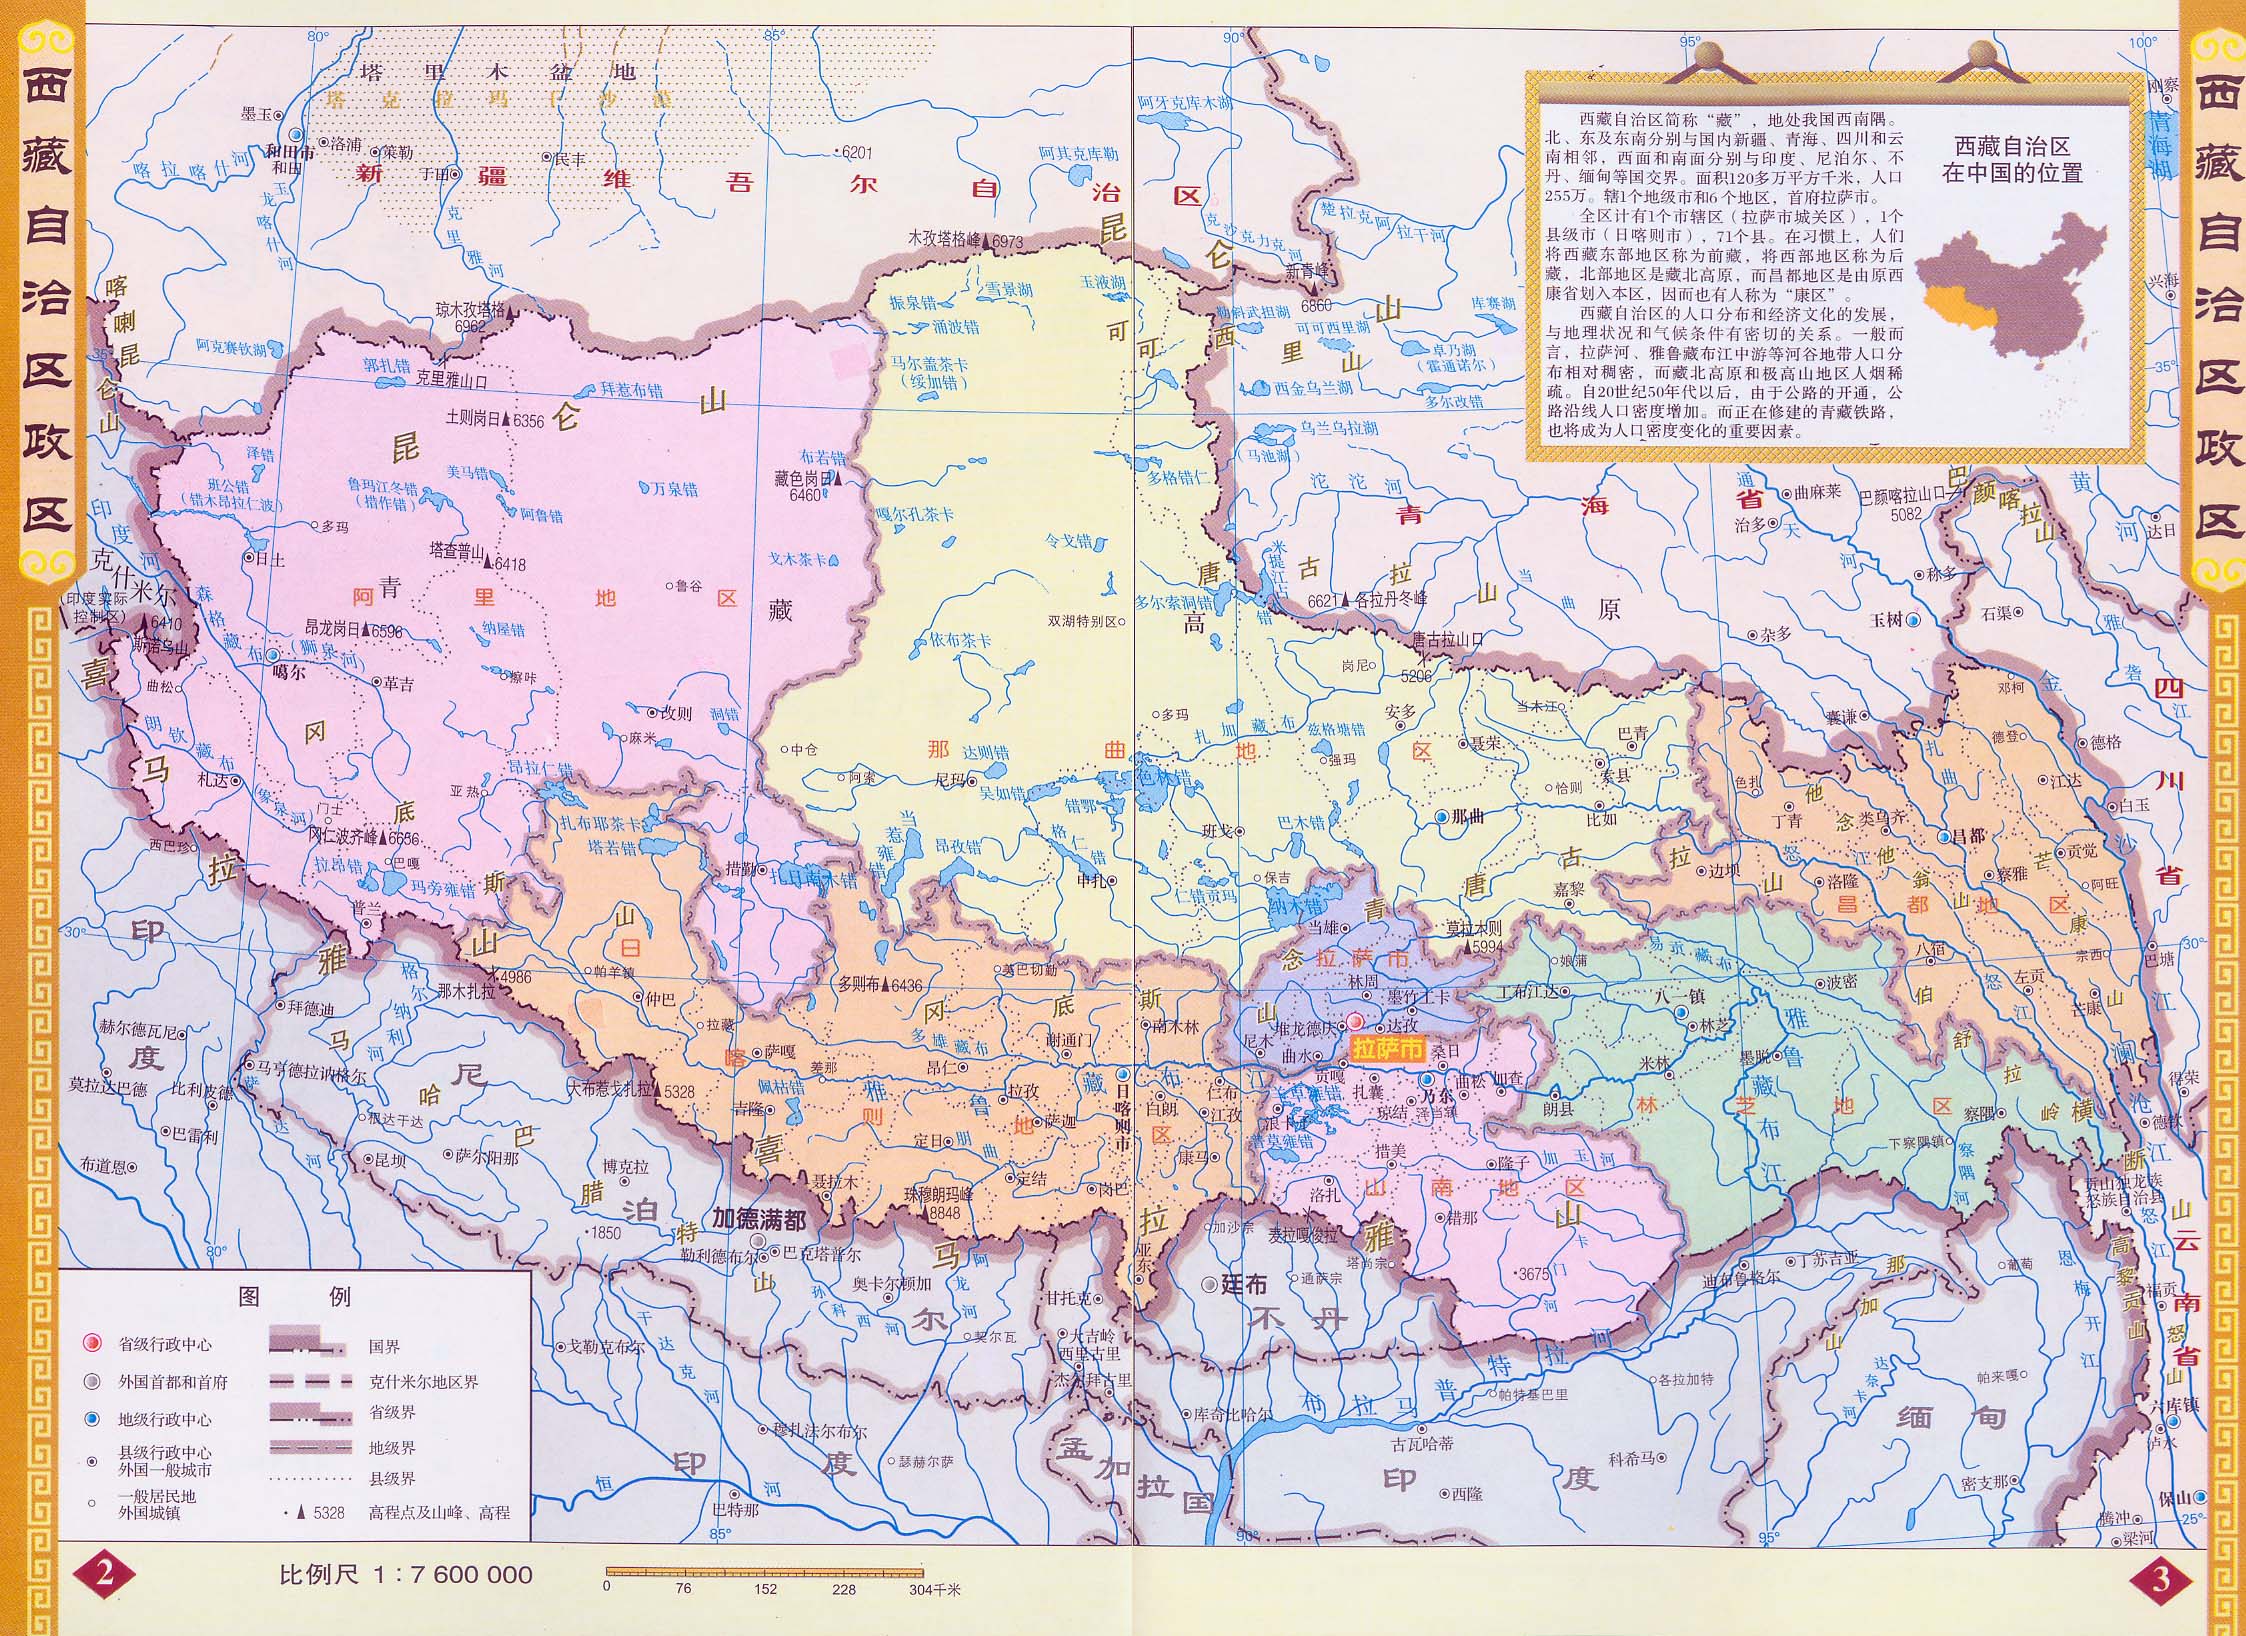 北邻新疆维吾尔自治区,东连四川省,东北紧靠青海省,东南连接云南省,南图片